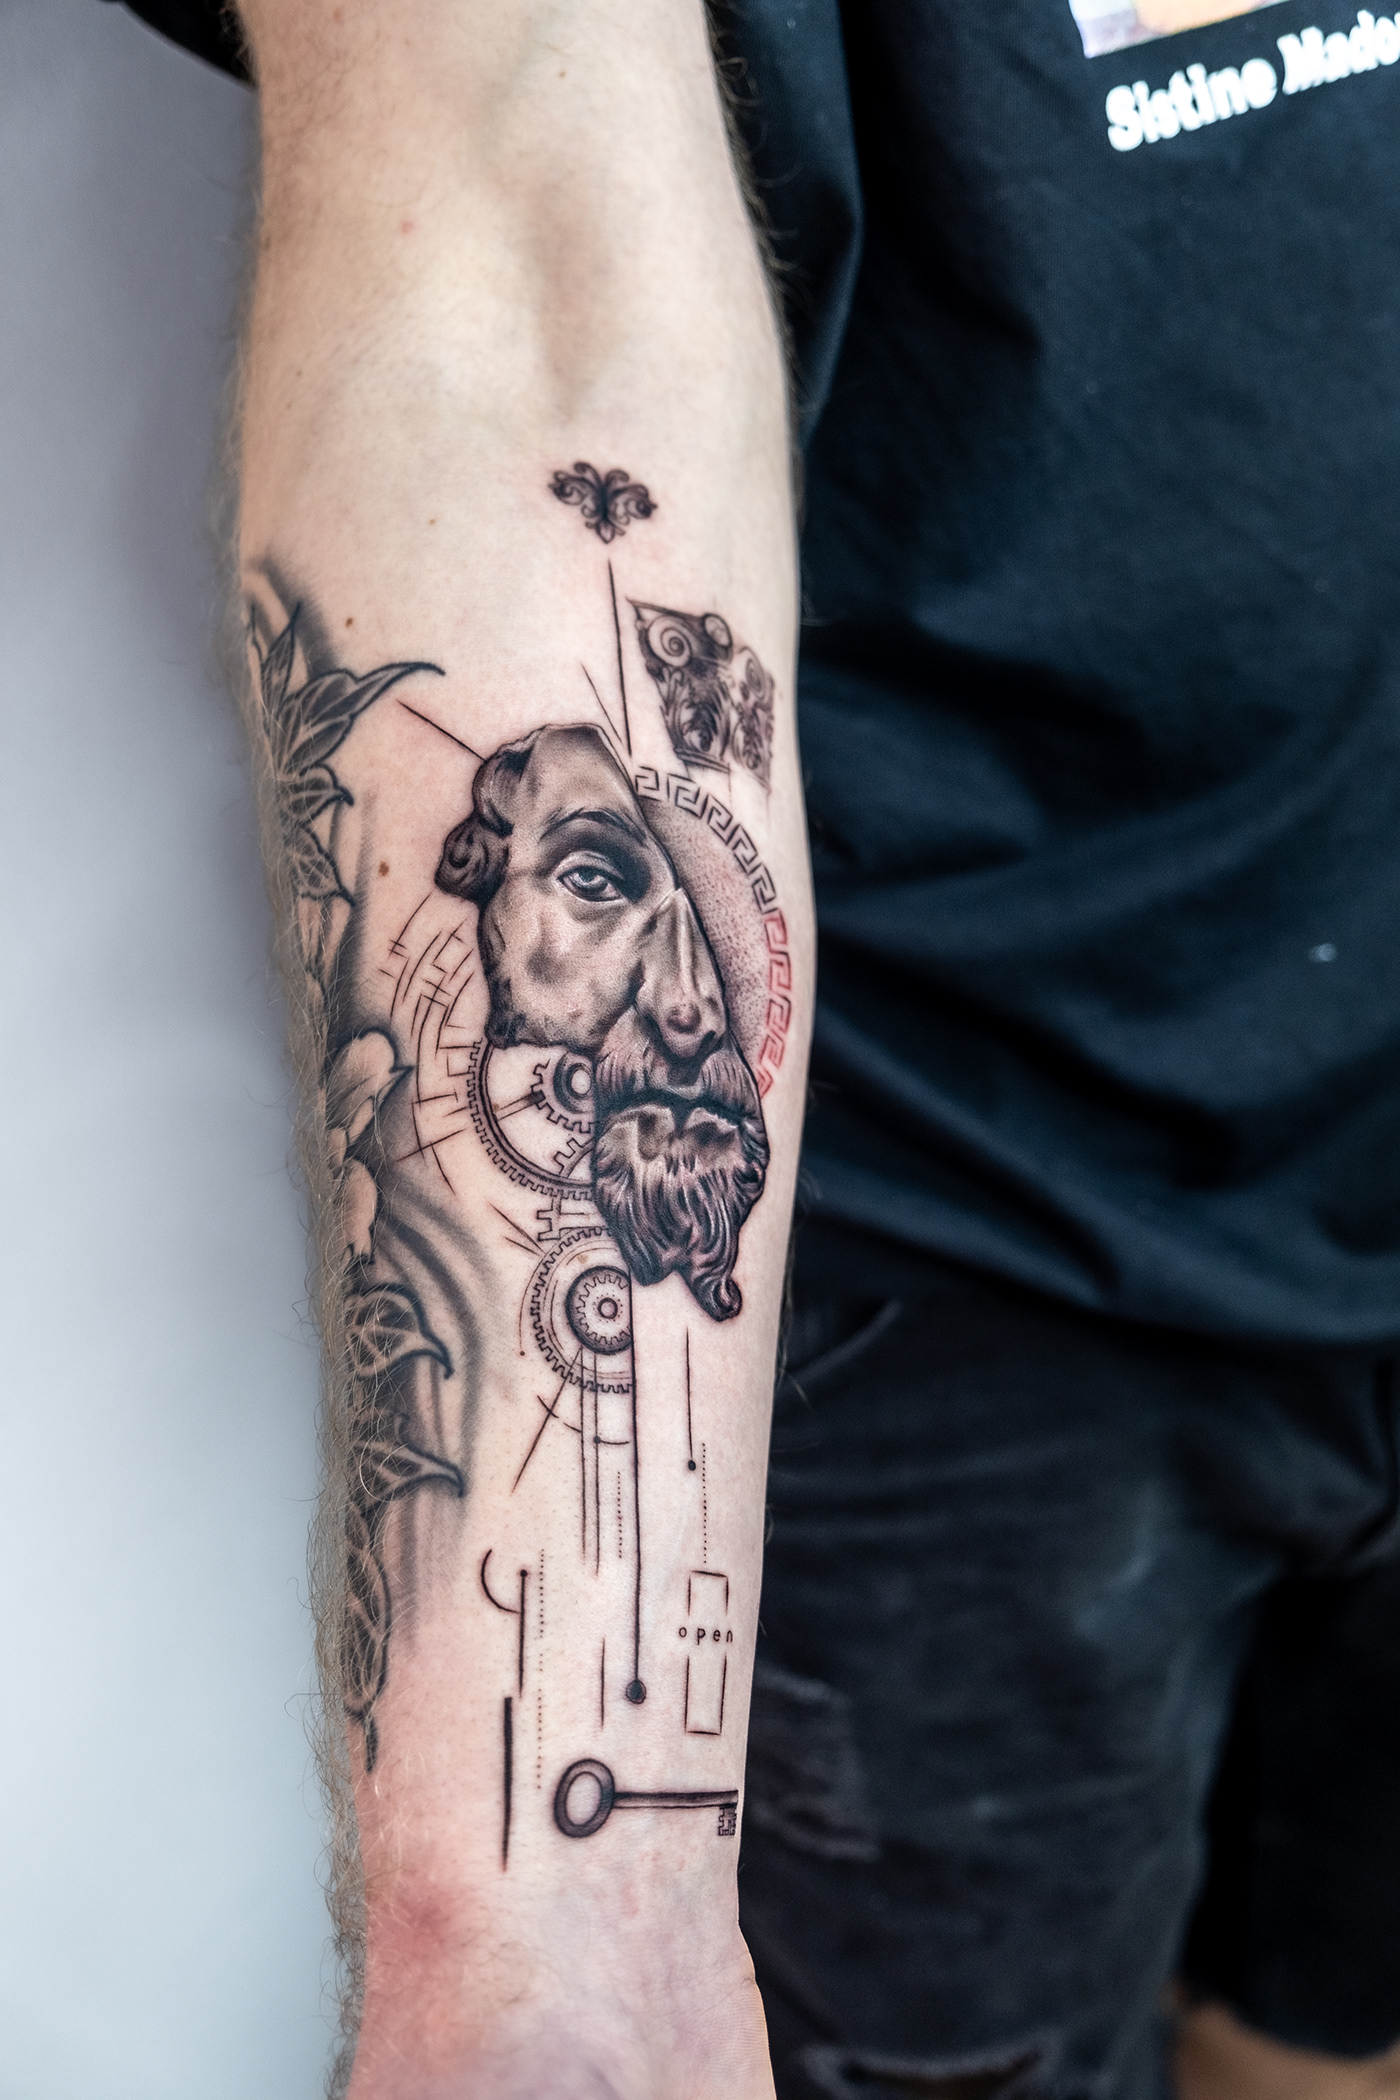 Marcus Aurelius microrealism tattoo beylikduzudovme onuryüksel marcustattoo realismtattoo statuetattoo